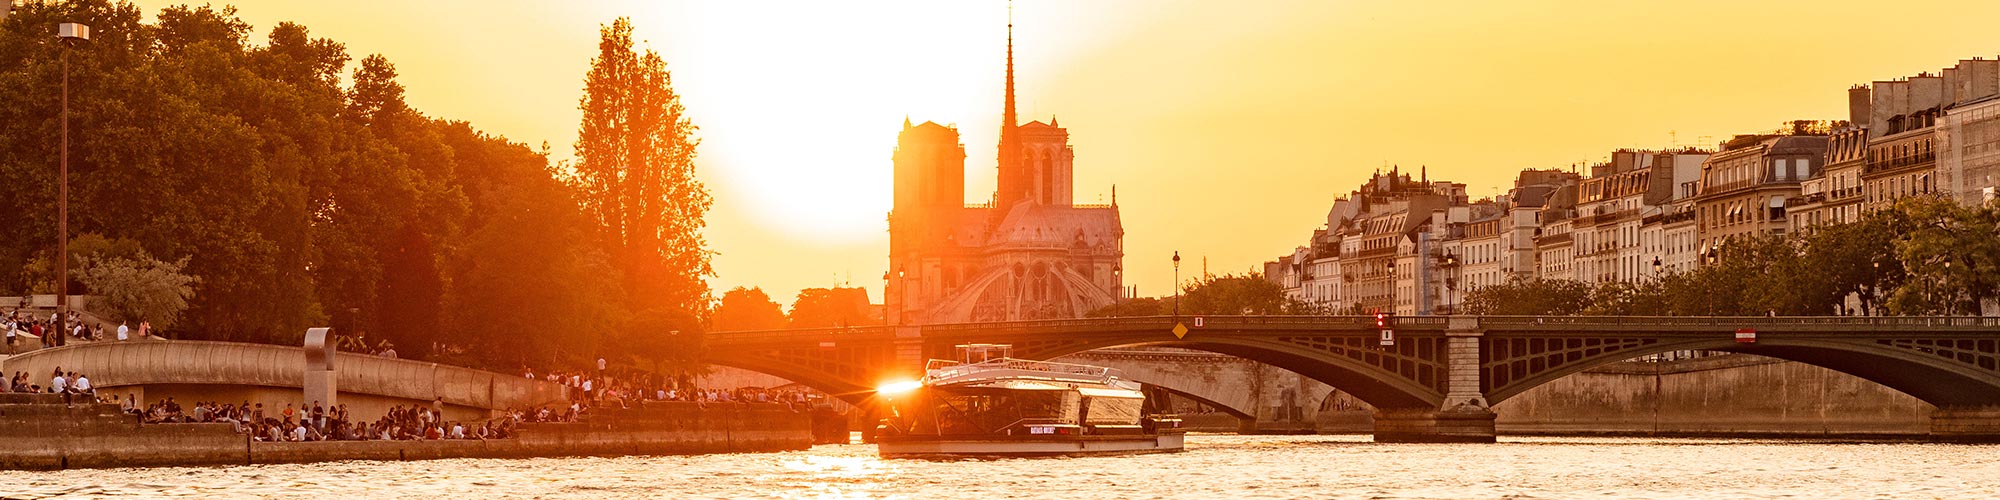 Croisière sur la Seine avec les Bateaux Mouches